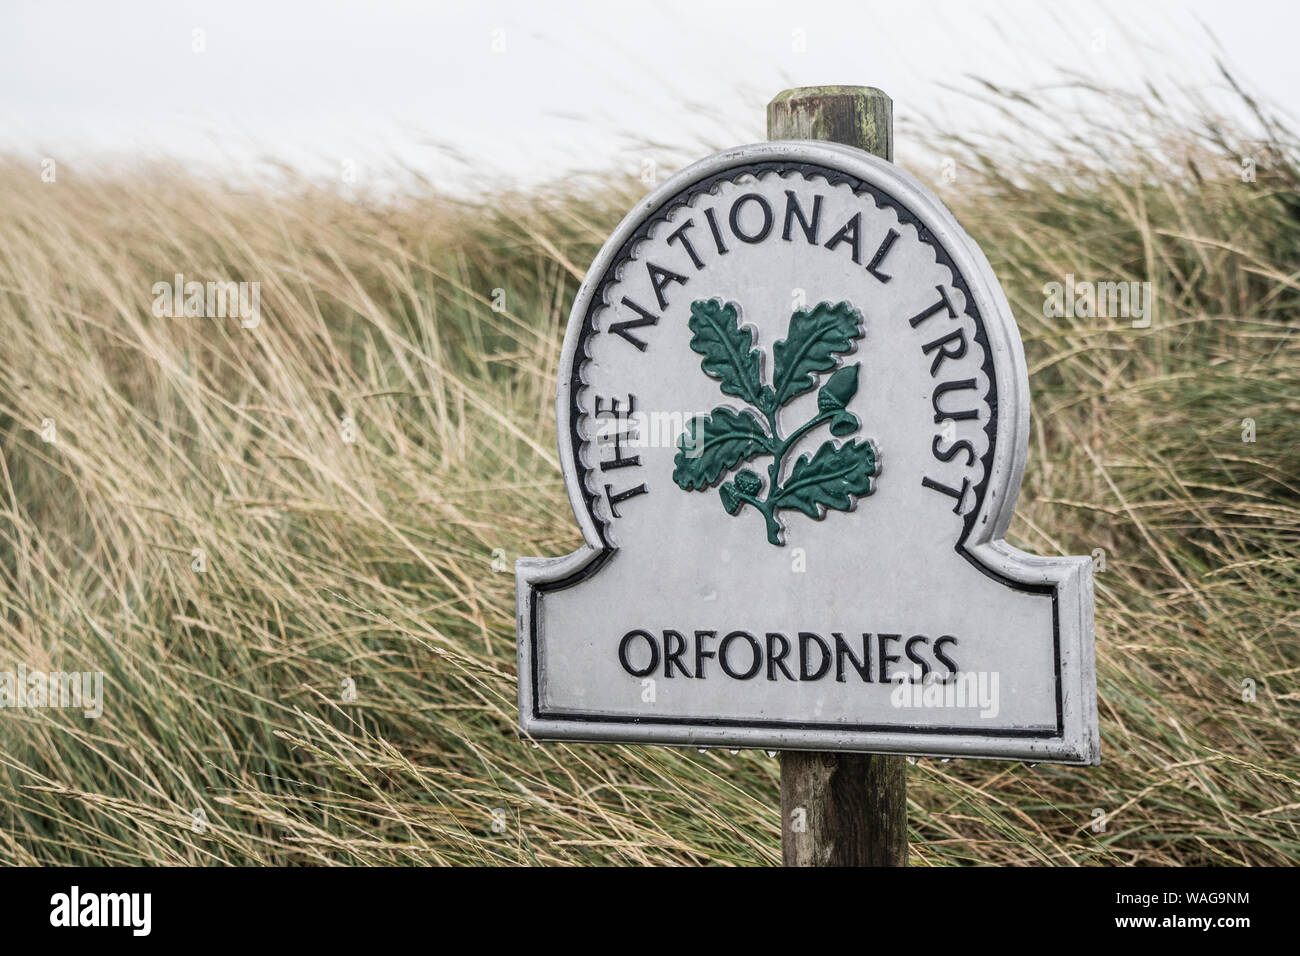 National Trust signe sur Orfordness,la réserve naturelle de la côte du Suffolk, Suffolk, Angleterre, RU Banque D'Images